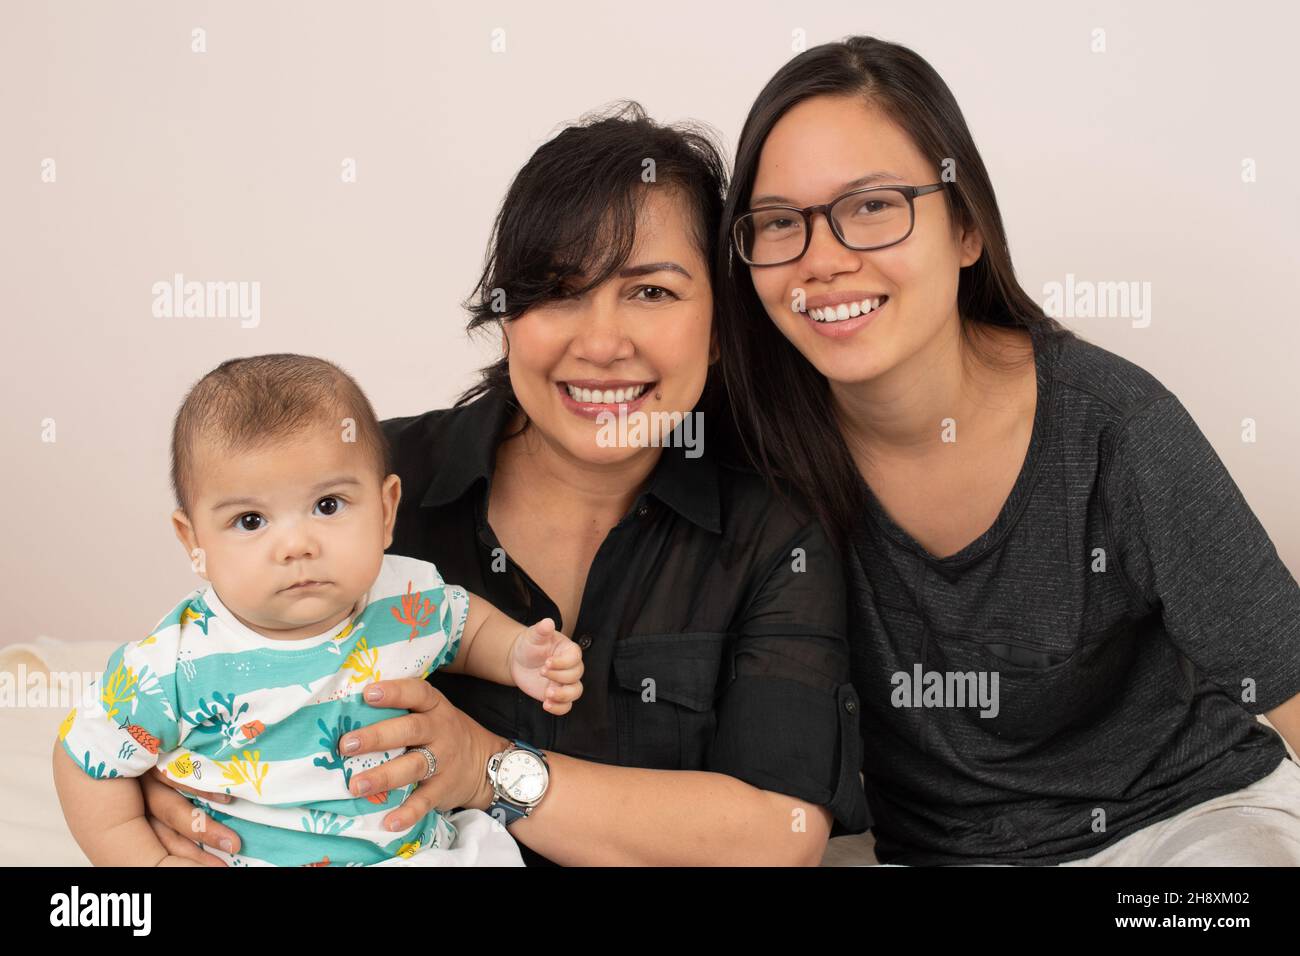 bébé garçon de 3 mois avec une sœur âgée de 20 ans et une mère, portrait, regardant l'appareil photo Banque D'Images